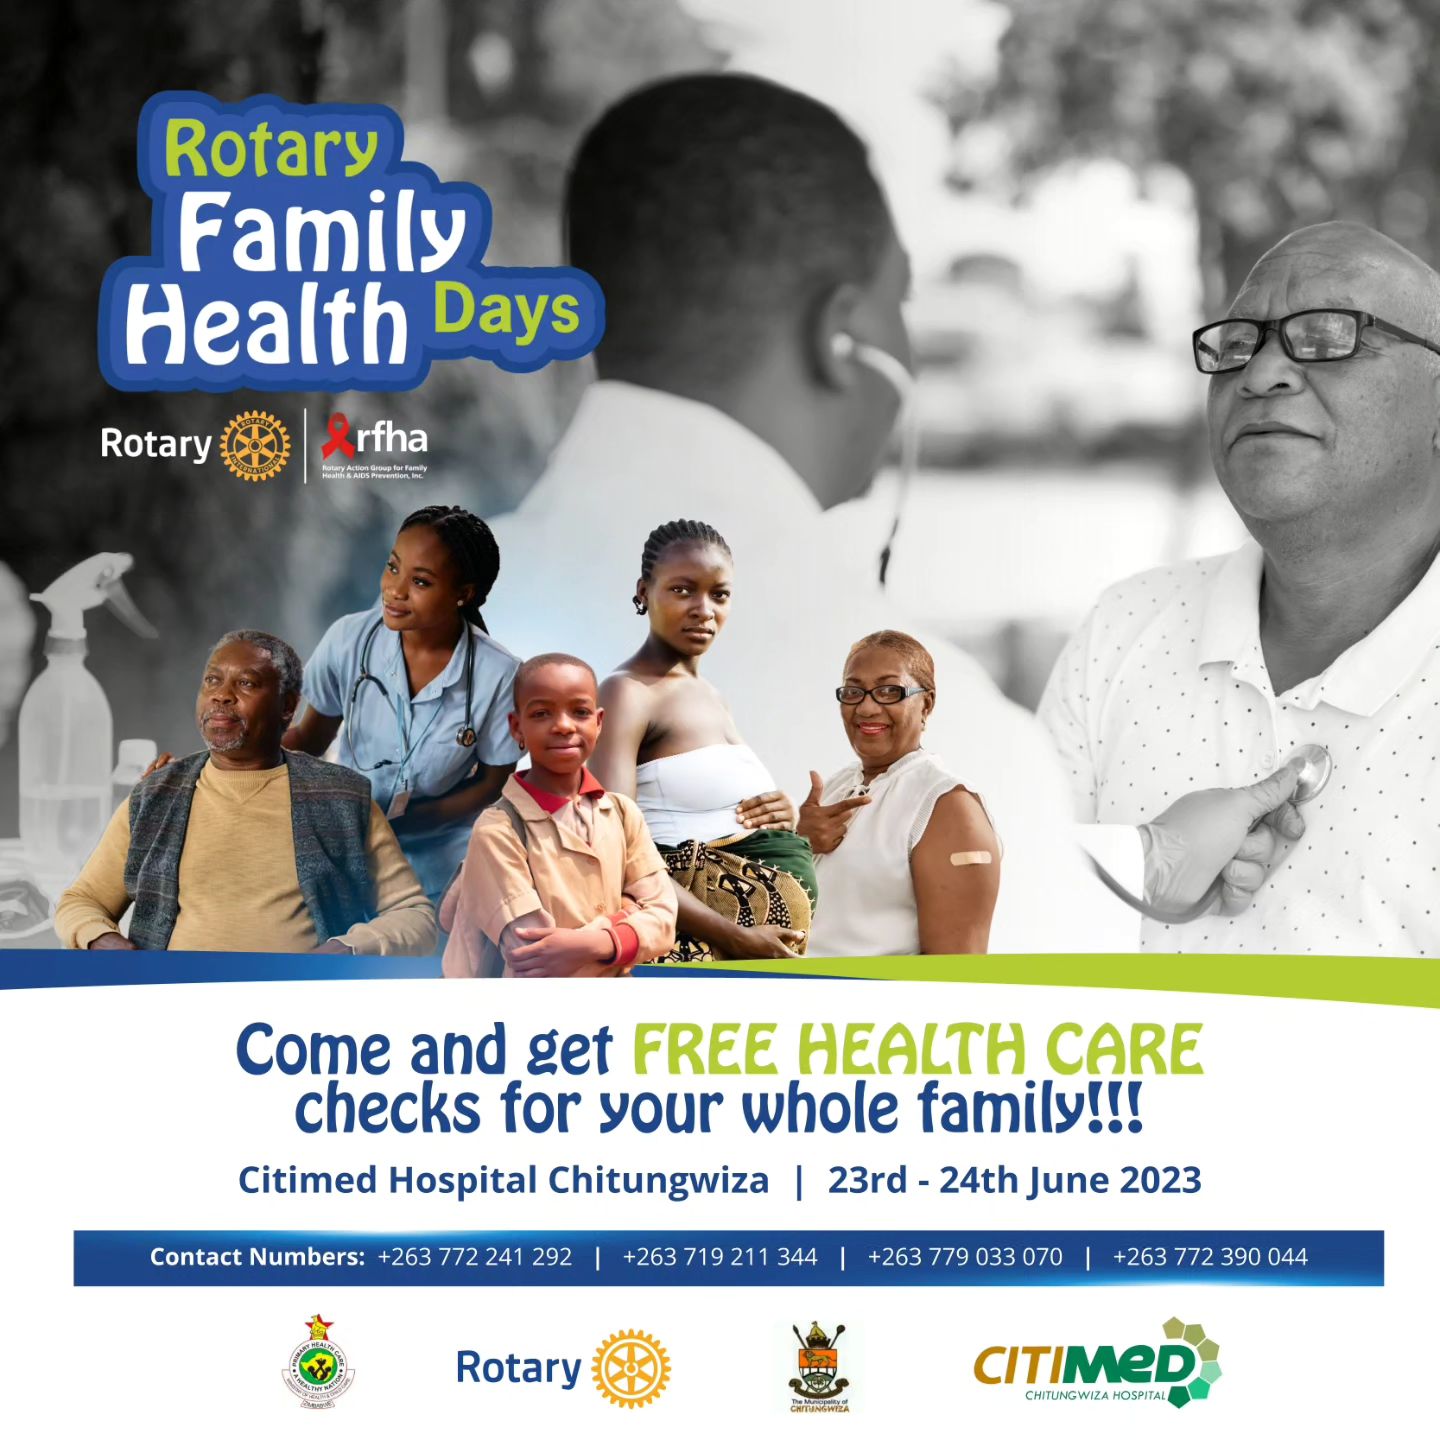 The Rotary Family Health Days